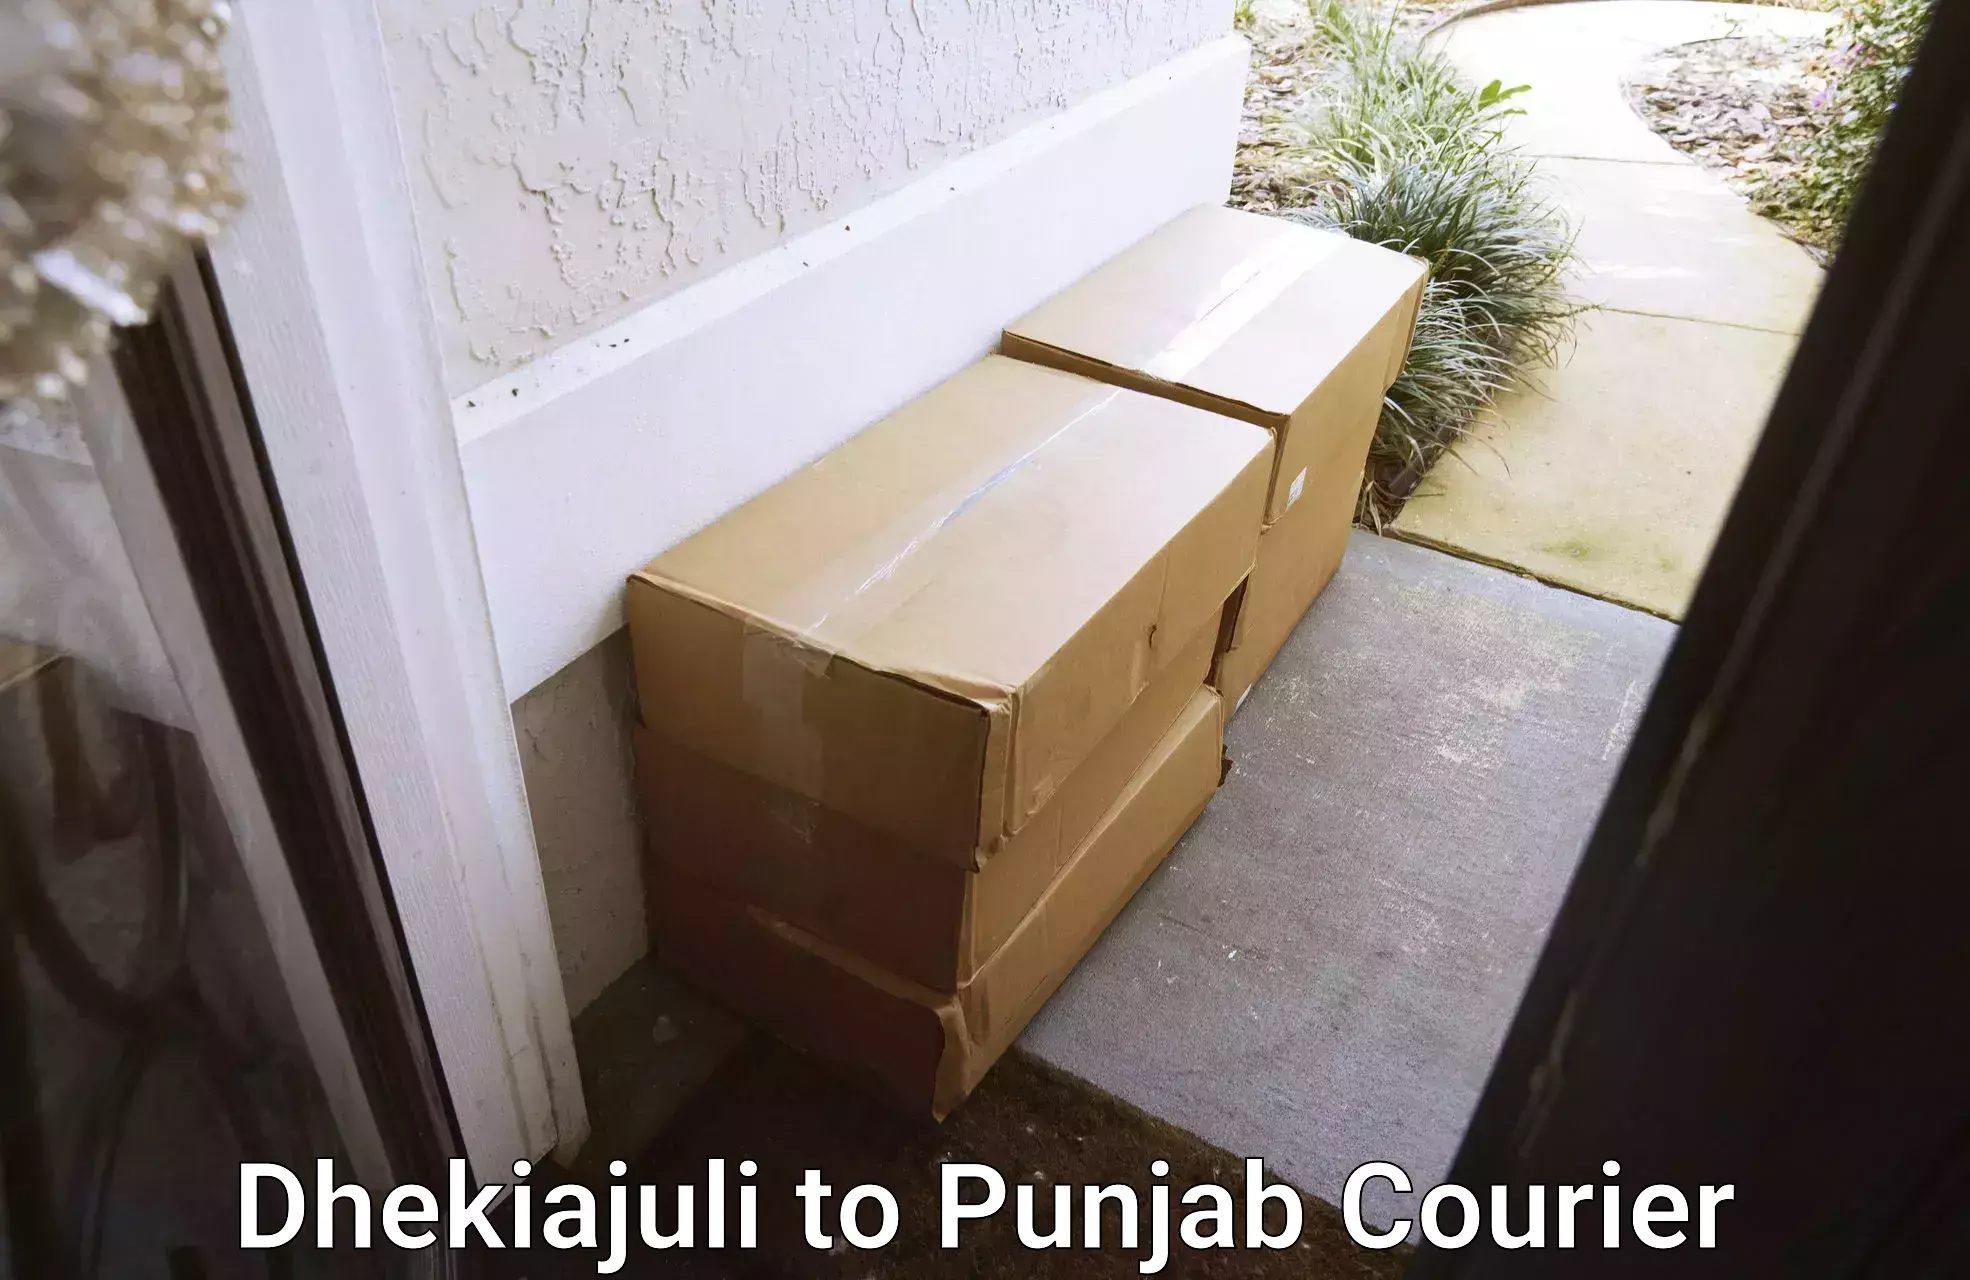 24-hour courier service Dhekiajuli to Khanna